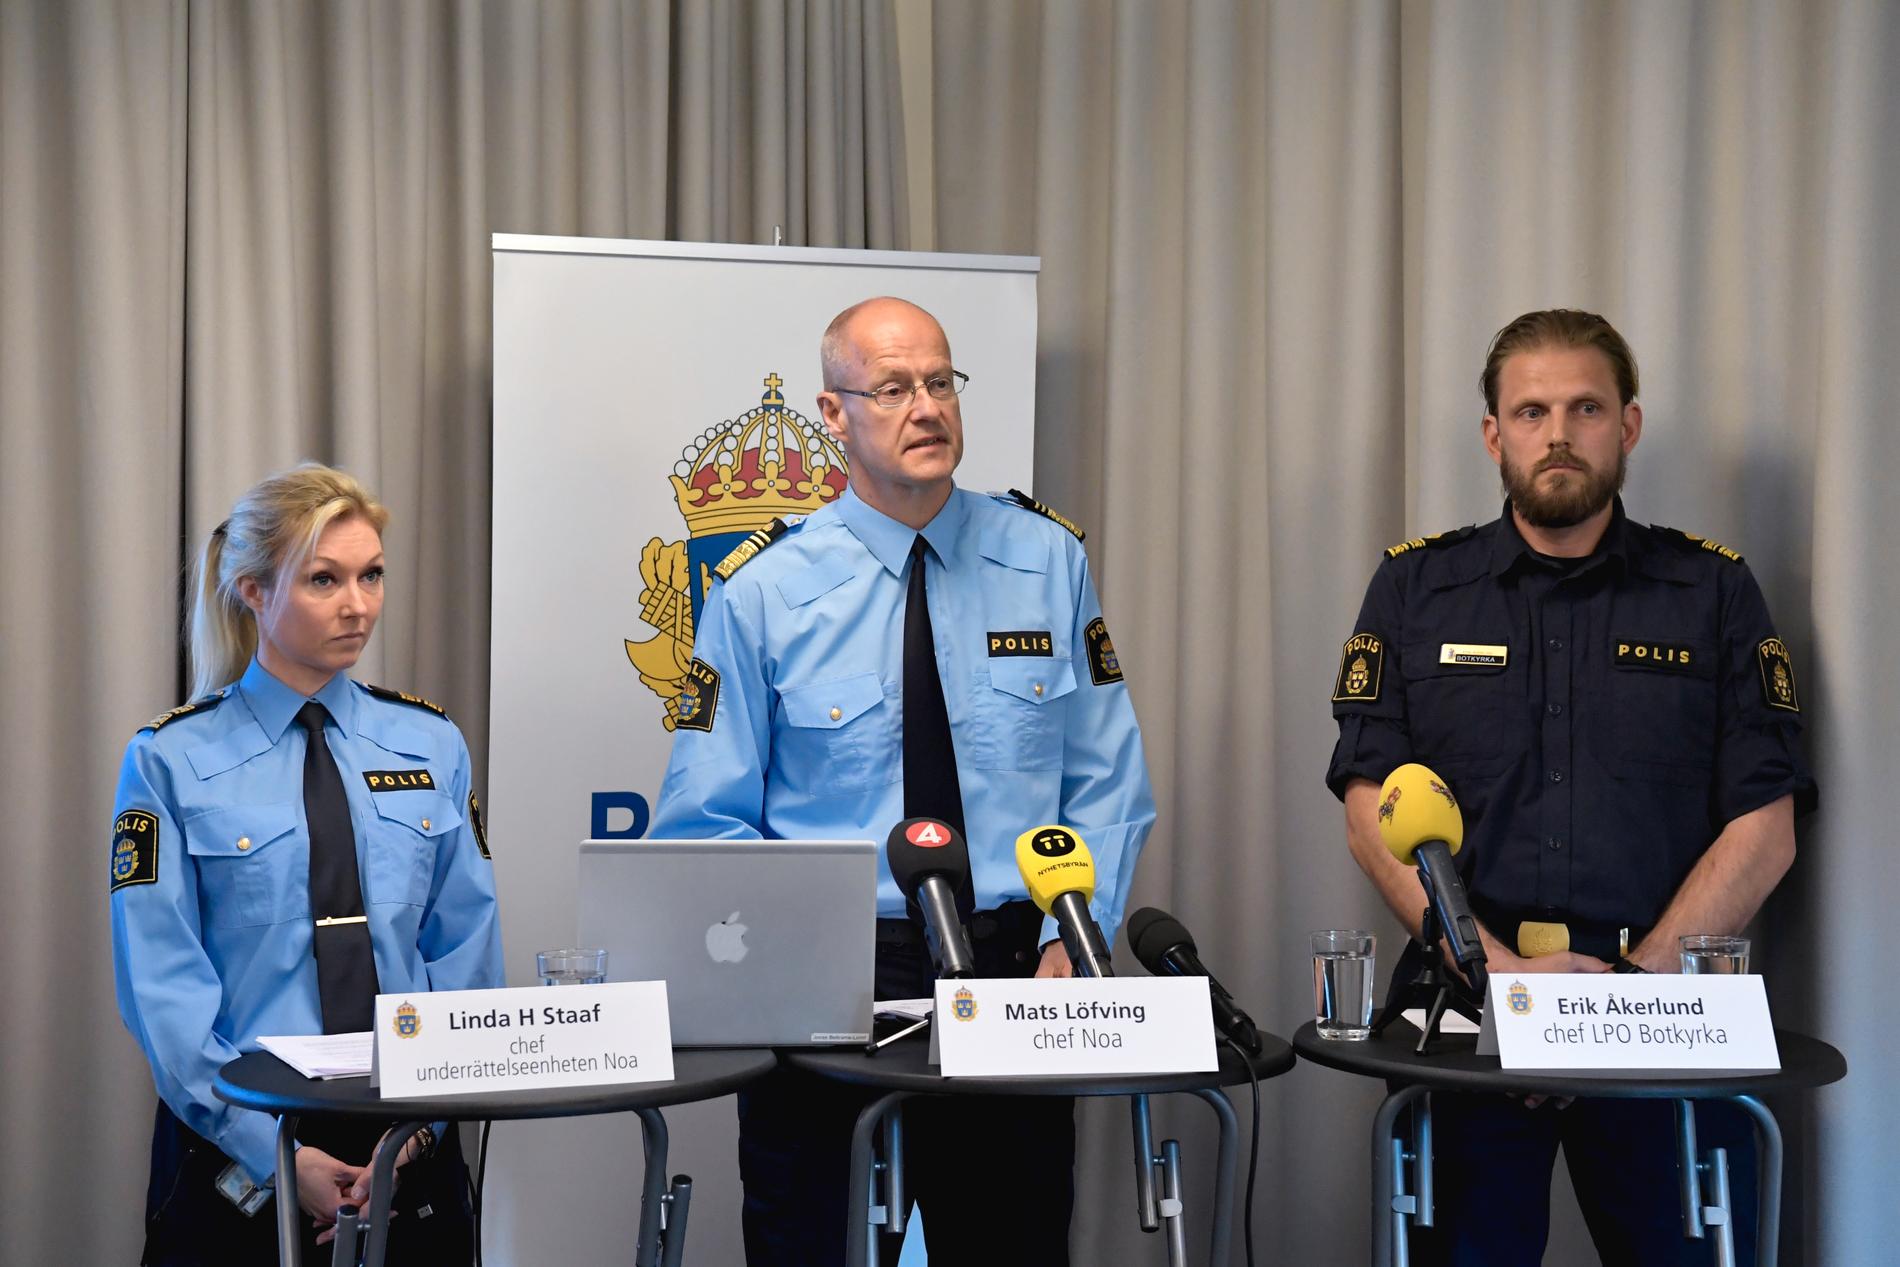 Linda H Staaf, chef för underrättsenheten Noa och Mats Löfving, chef för Noa tillsammans med Erik Åkerlund, chef lokalpolisområde Botkyrka, under en pressträff 2019.